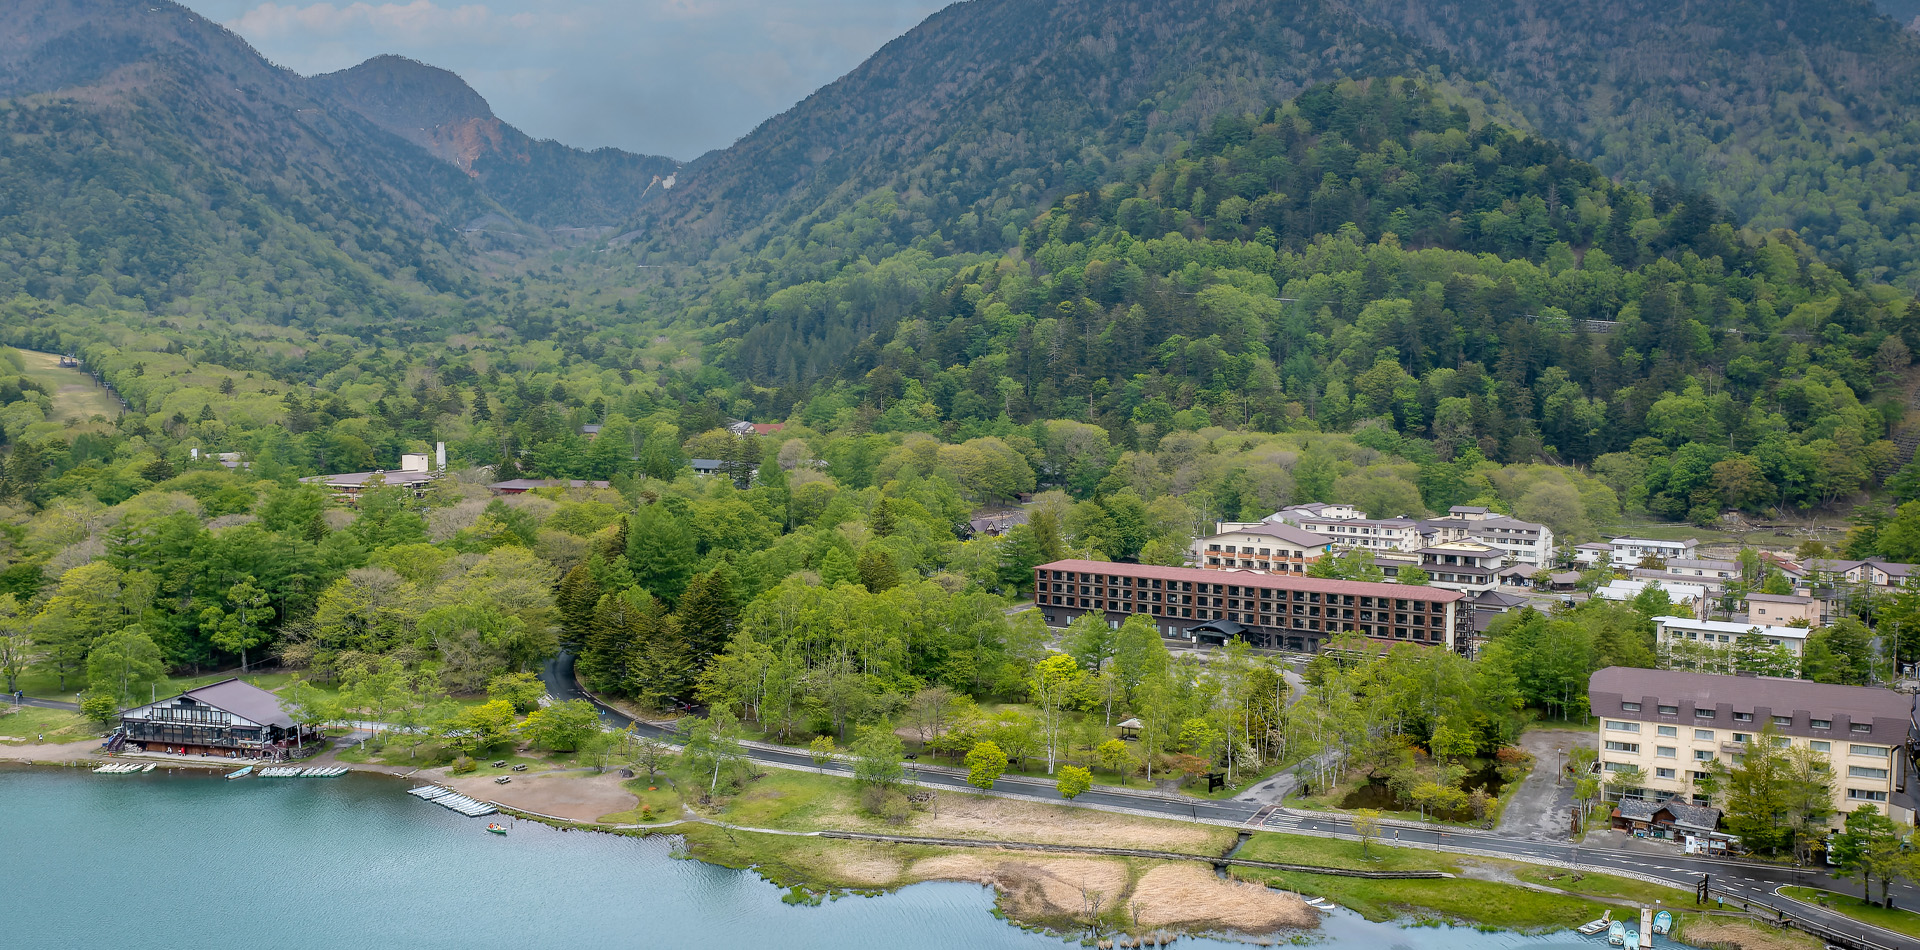 这家酒店坐落在奥日光的绝佳户外环境中，周围环绕着瀑布、湖泊和山脉。